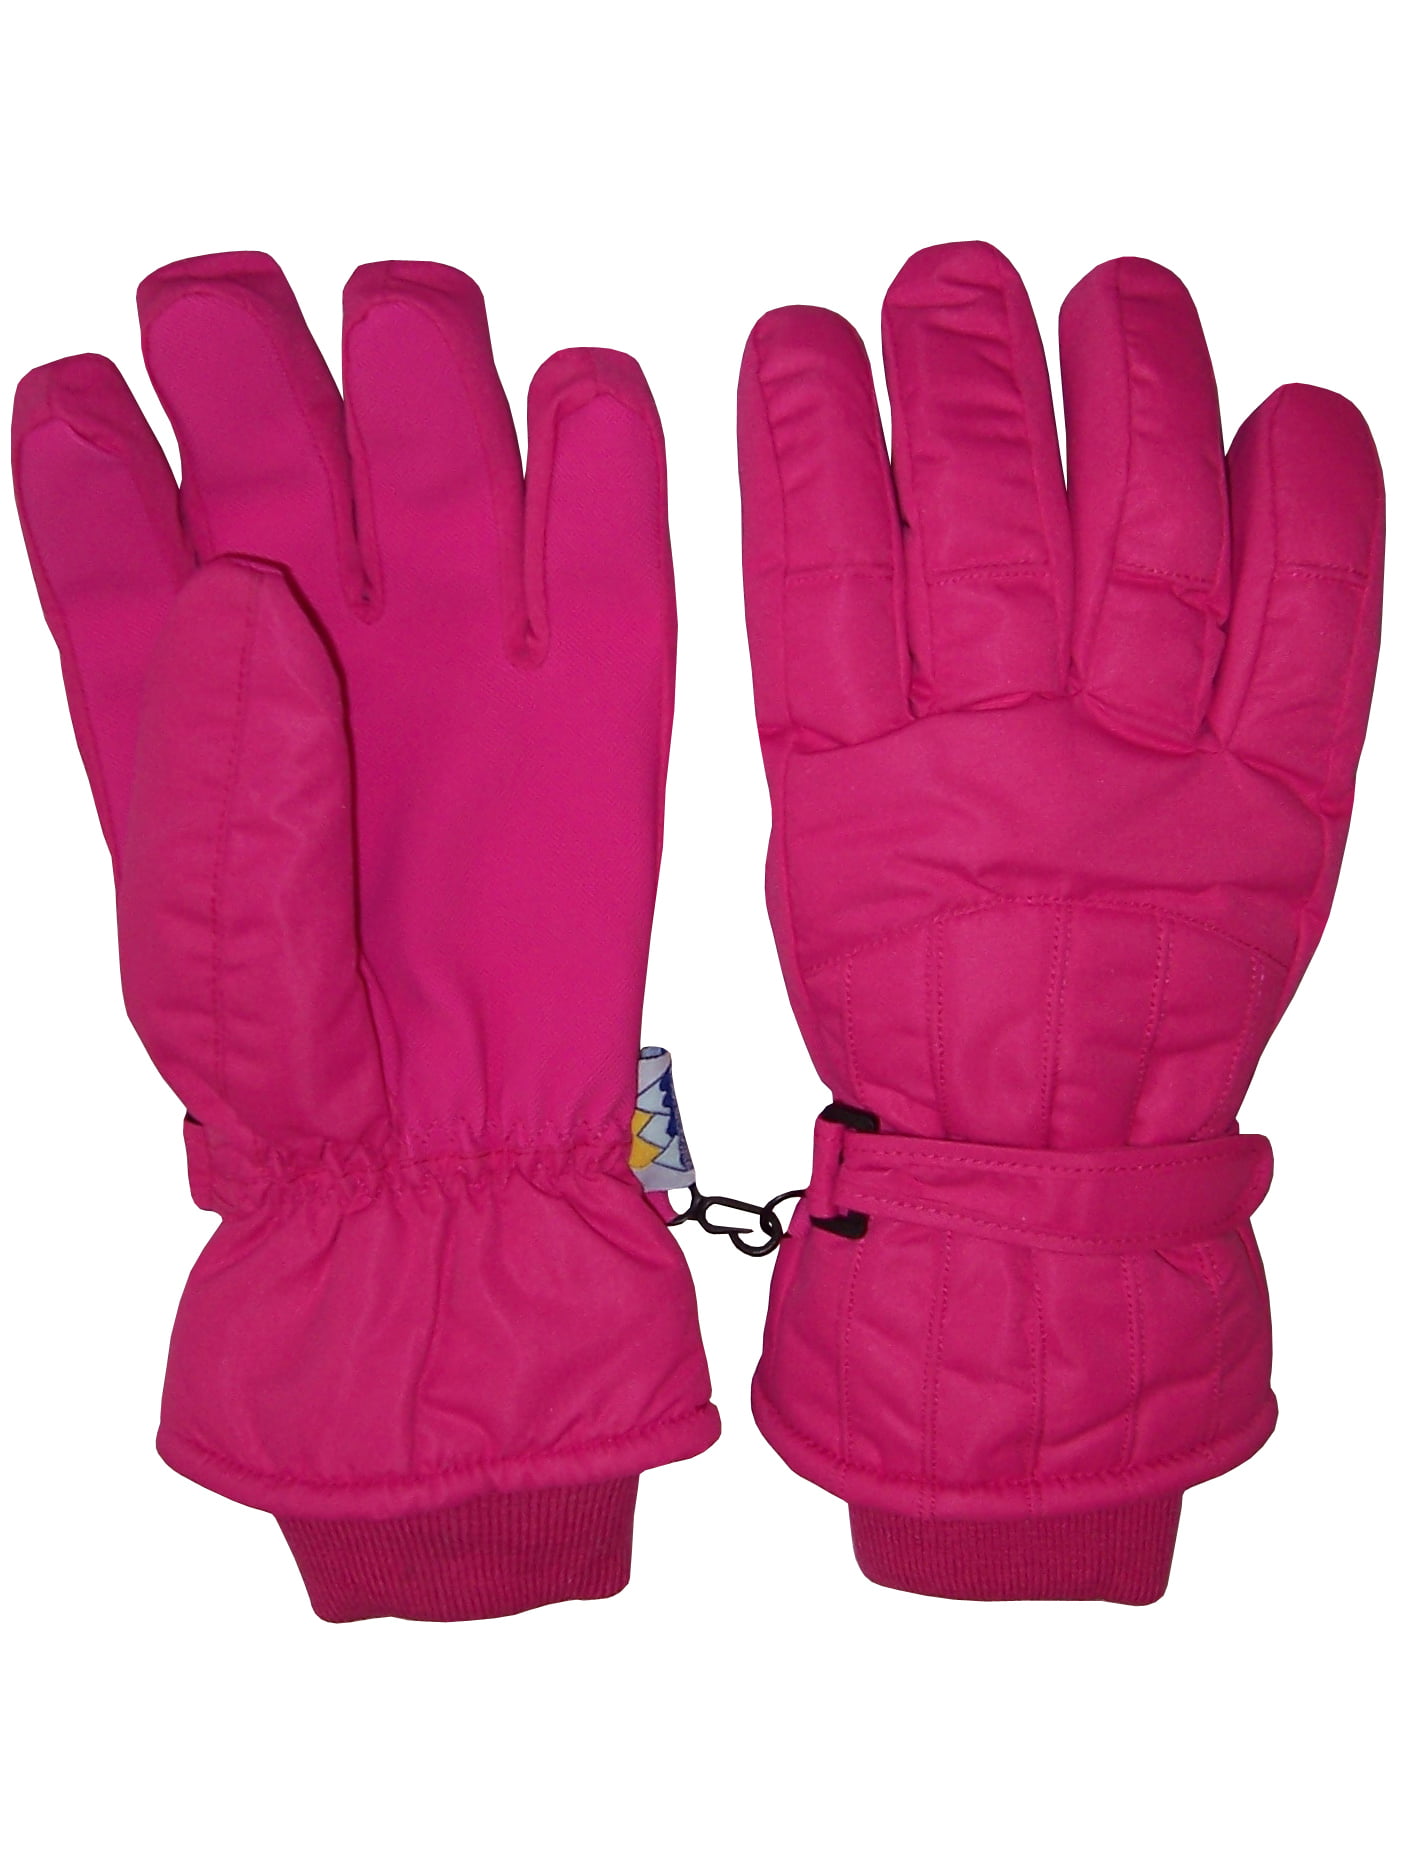 Champion Girls Snow Winter Ski Glove Pink 3M Thinsulte Warmest Waterproof sz 4/7 